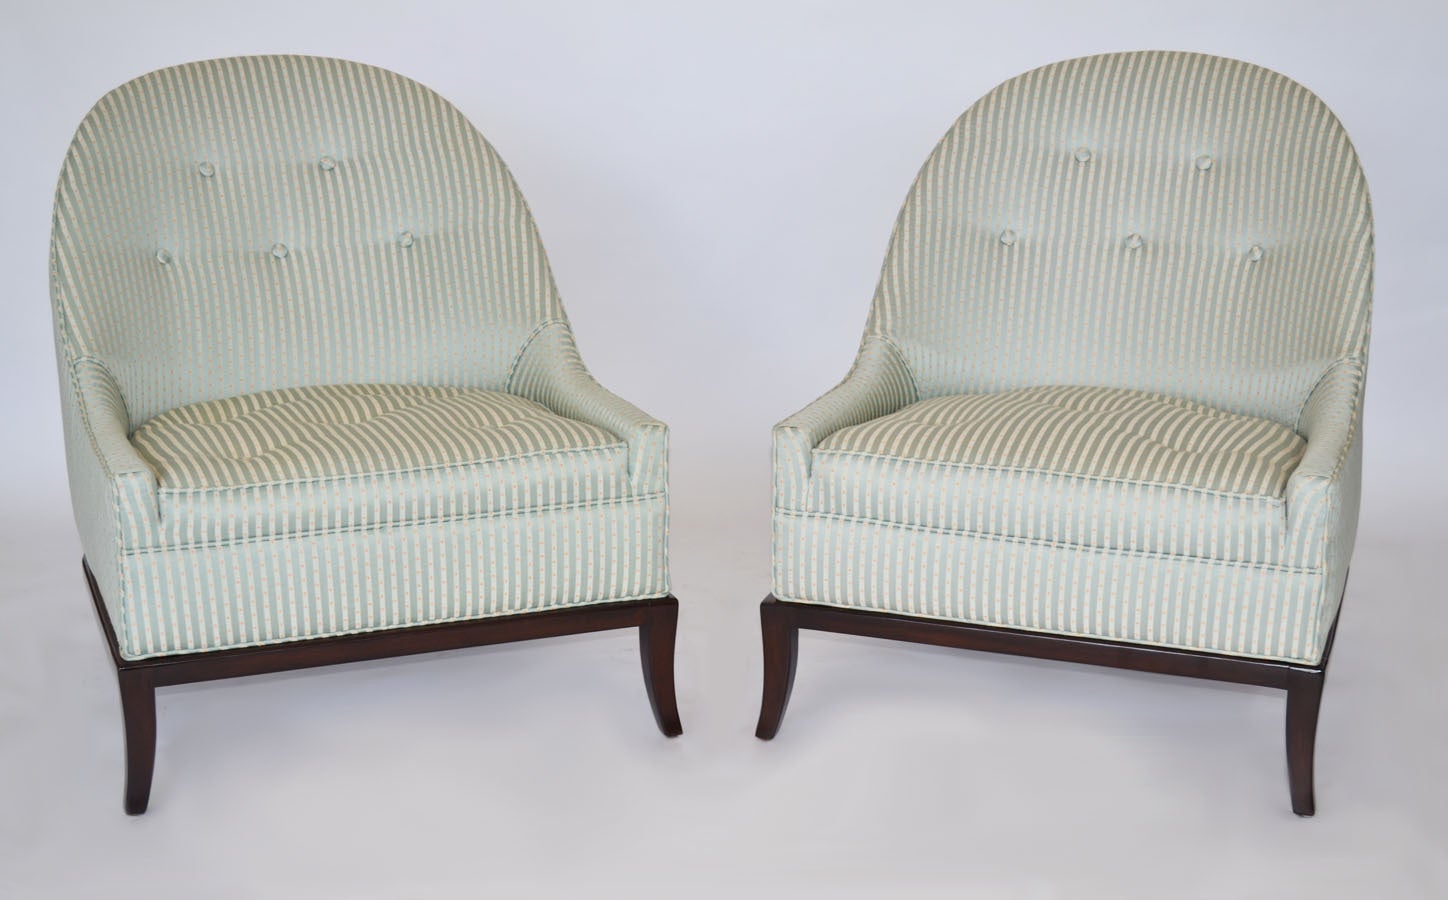 Pair of Rare Slipper Chairs by T.H. Robsjohn-Gibbings